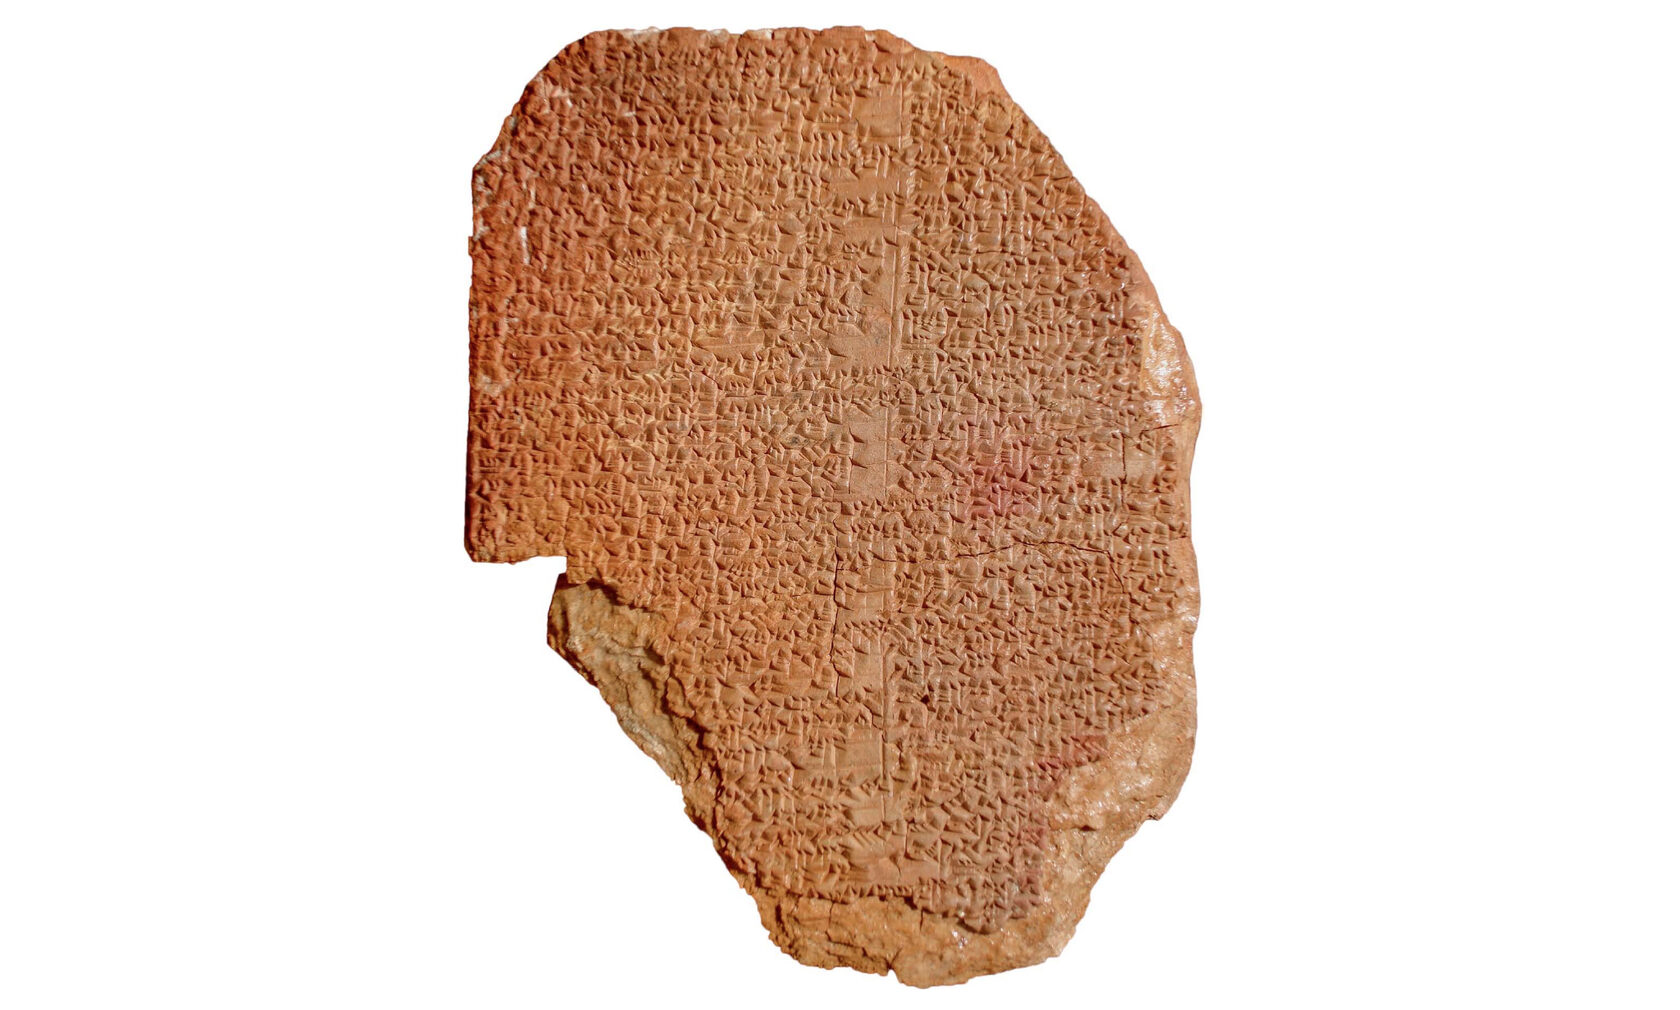 Gilgamesh Dream Tablet. Одна из глиняных табличек, незаконно приобретенных Музеем Библии.